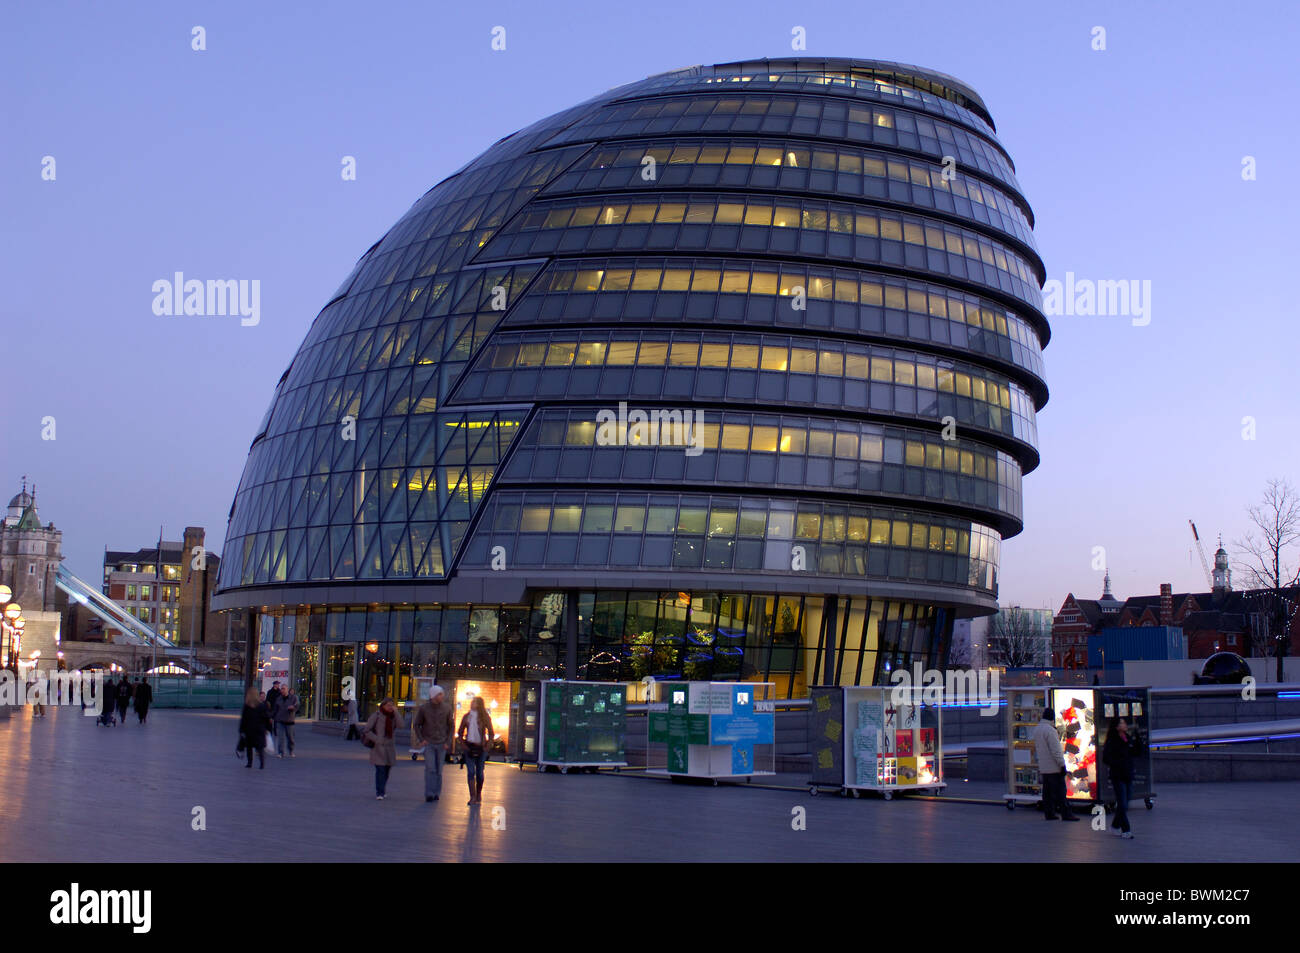 UK City Hall de Londres Greater London Authority Gran Bretaña Europa Reino Unido Inglaterra Europa Arquitectura Foto de stock